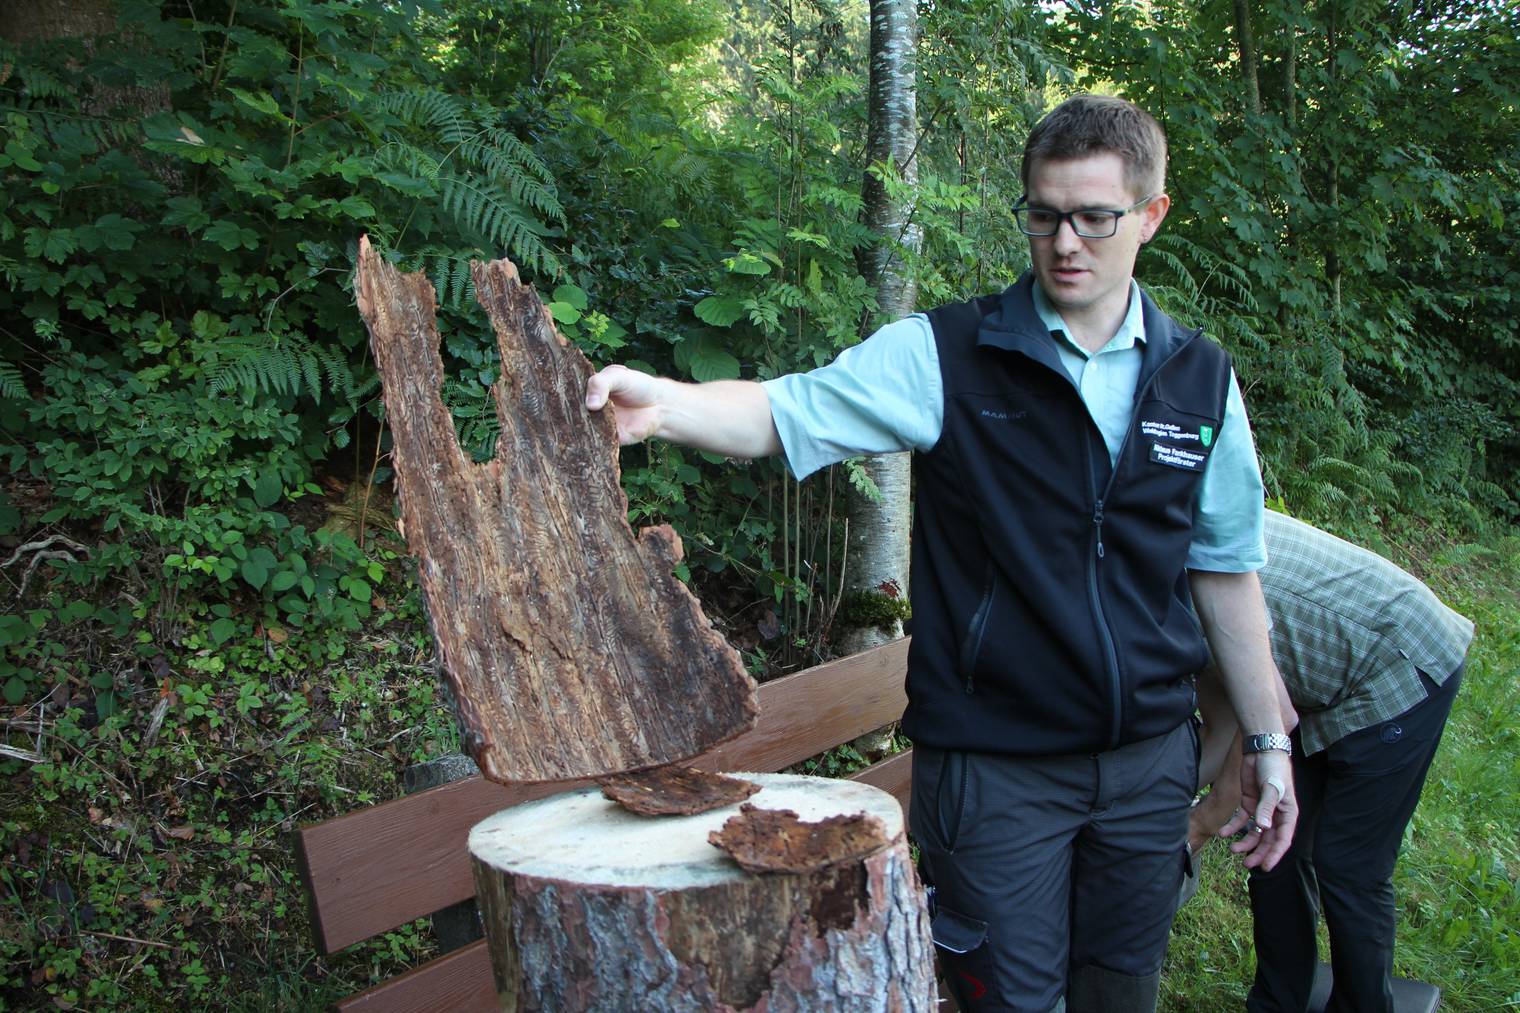 Borkenkäfer müssen bekämft werden, wenn sie noch im Baum sind, sagt Nikolaus Fankhauser, Förster der Waldregion Toggenburg. (Bild: Lara Abderhalden)